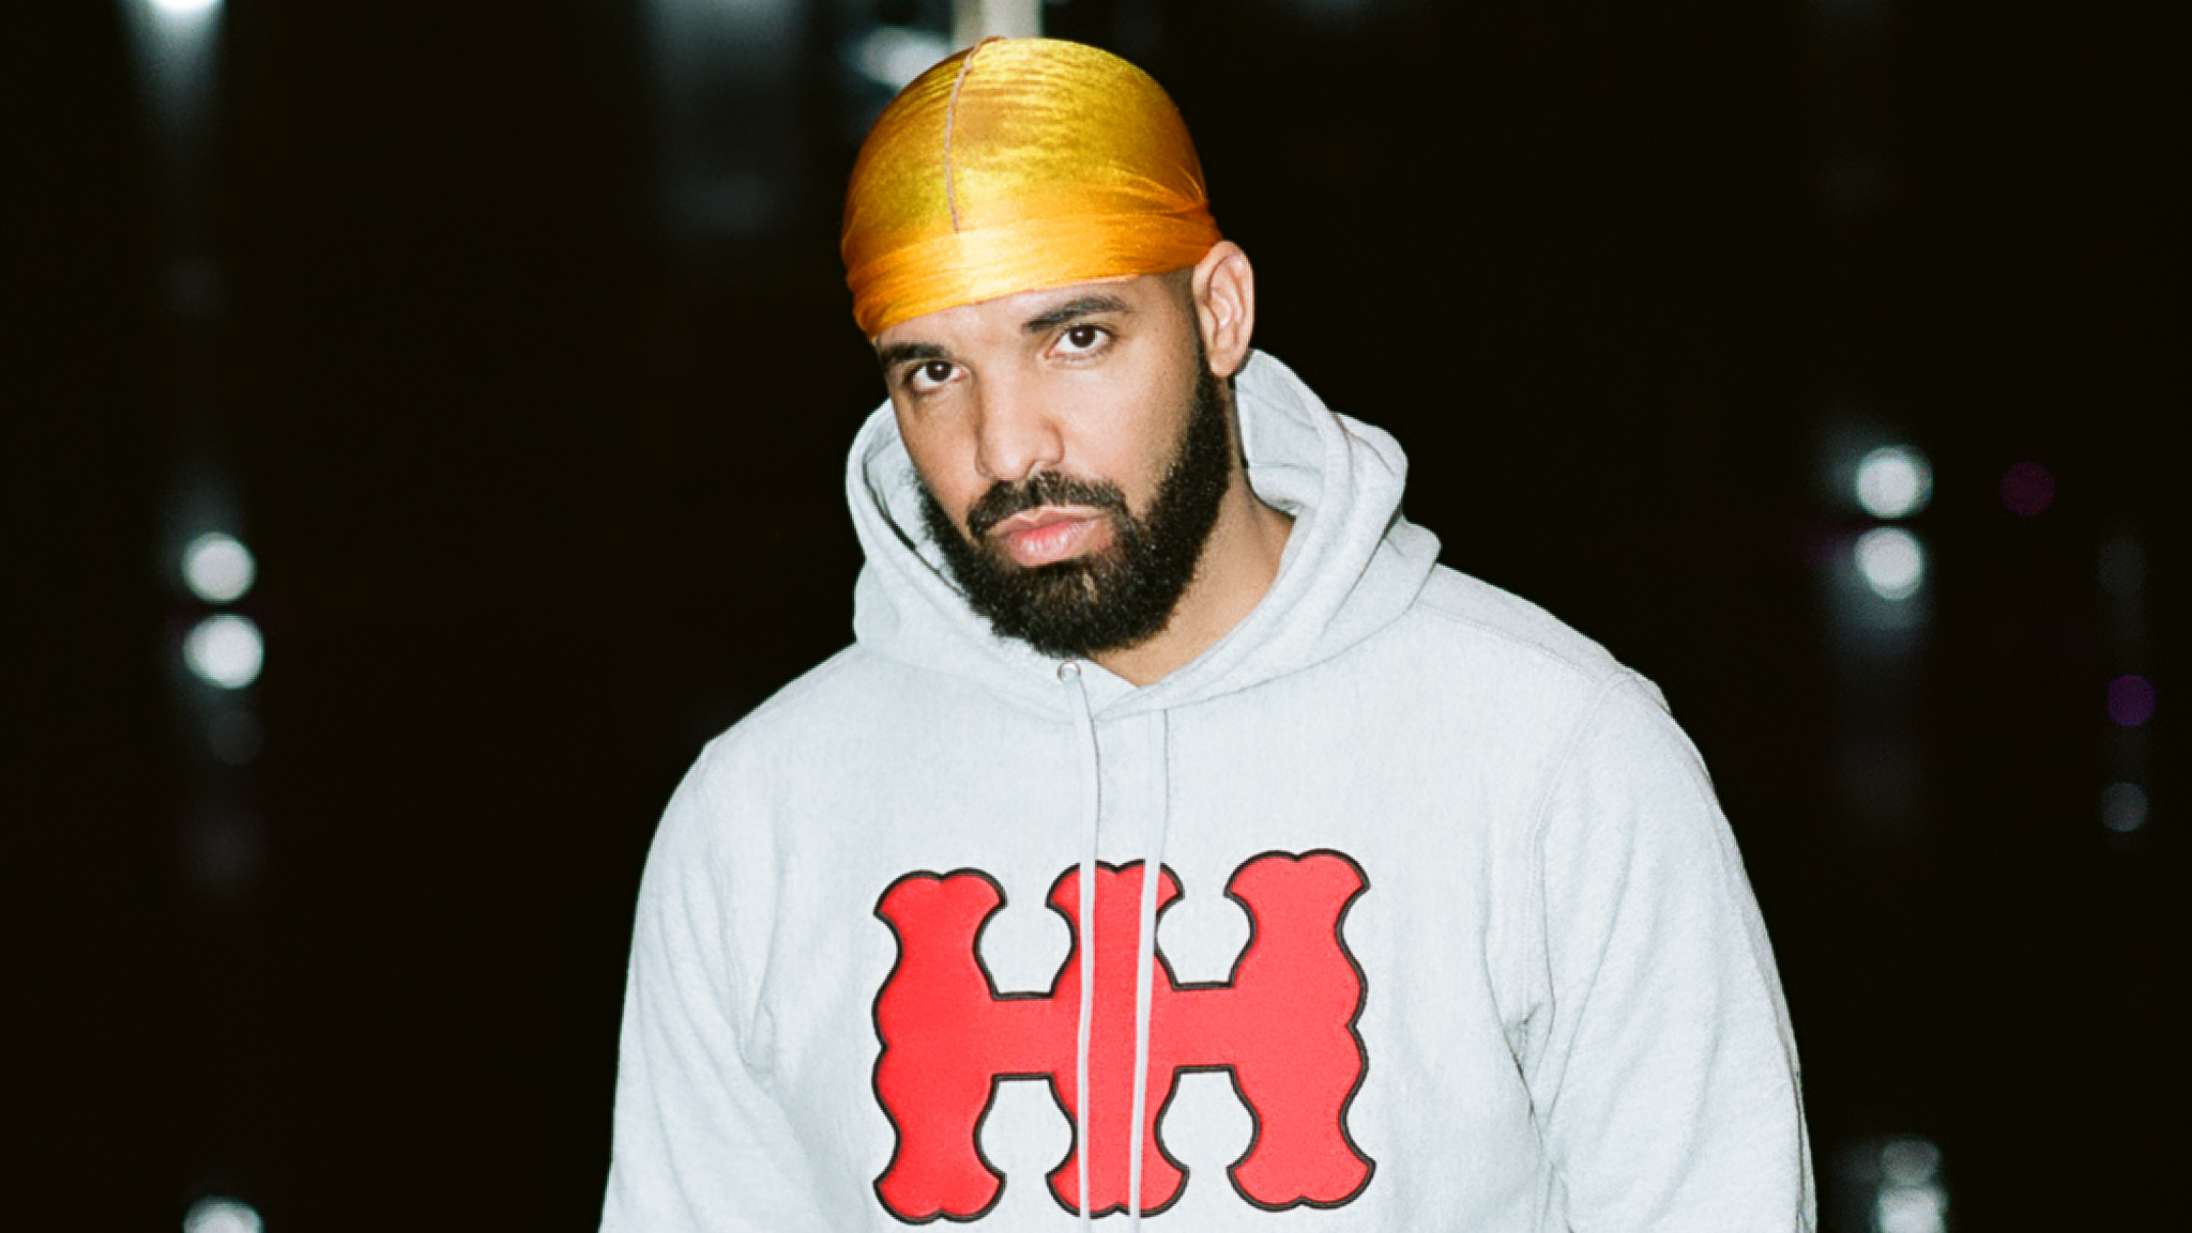 Drake sampler danske Quadron på nyt seks minutter langt nummer